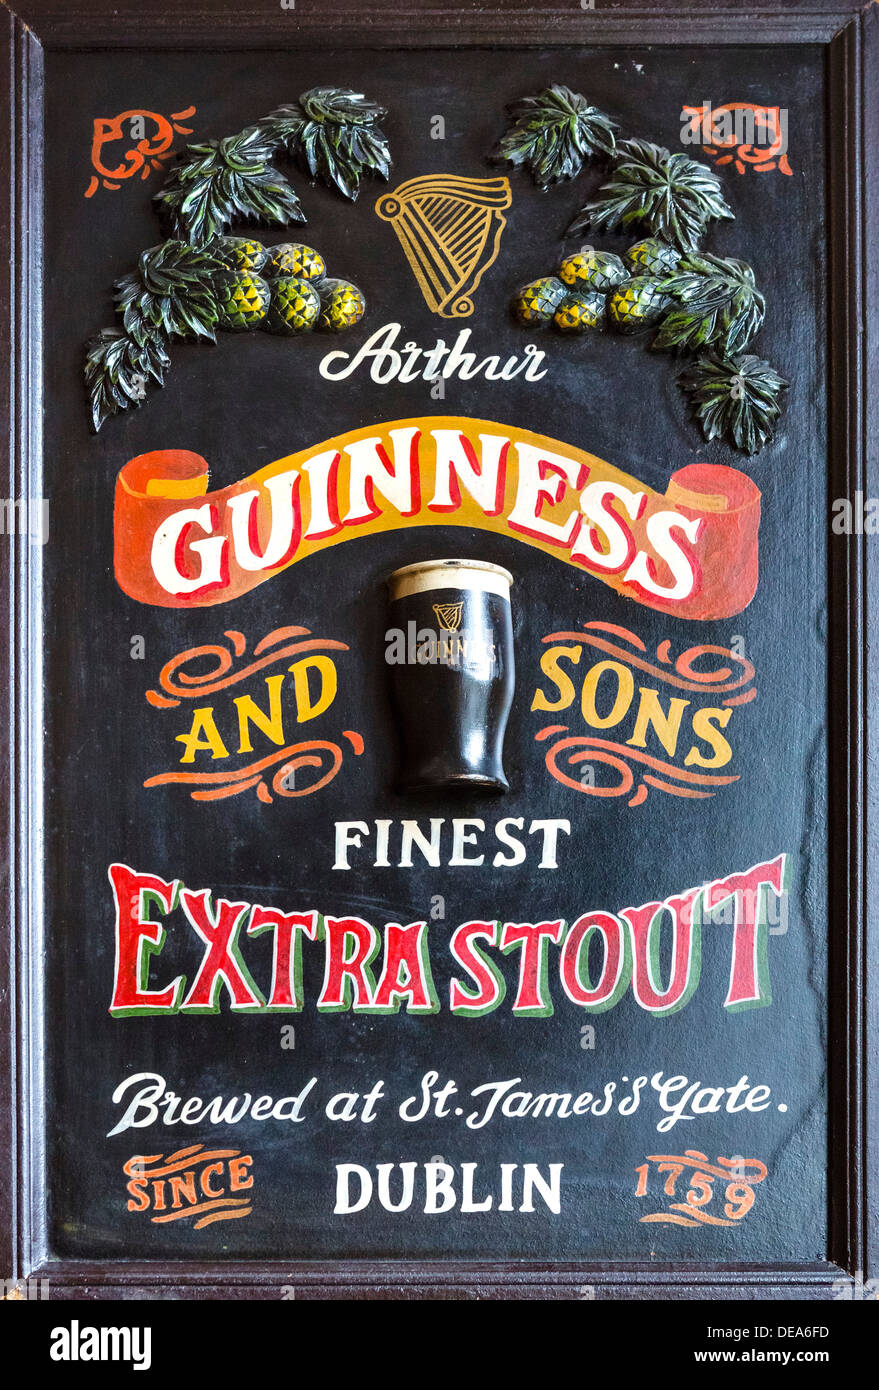 Vecchio Guinness migliori Extra Stout pannello pubblicitario su una parete di pub, Wales, Regno Unito Foto Stock